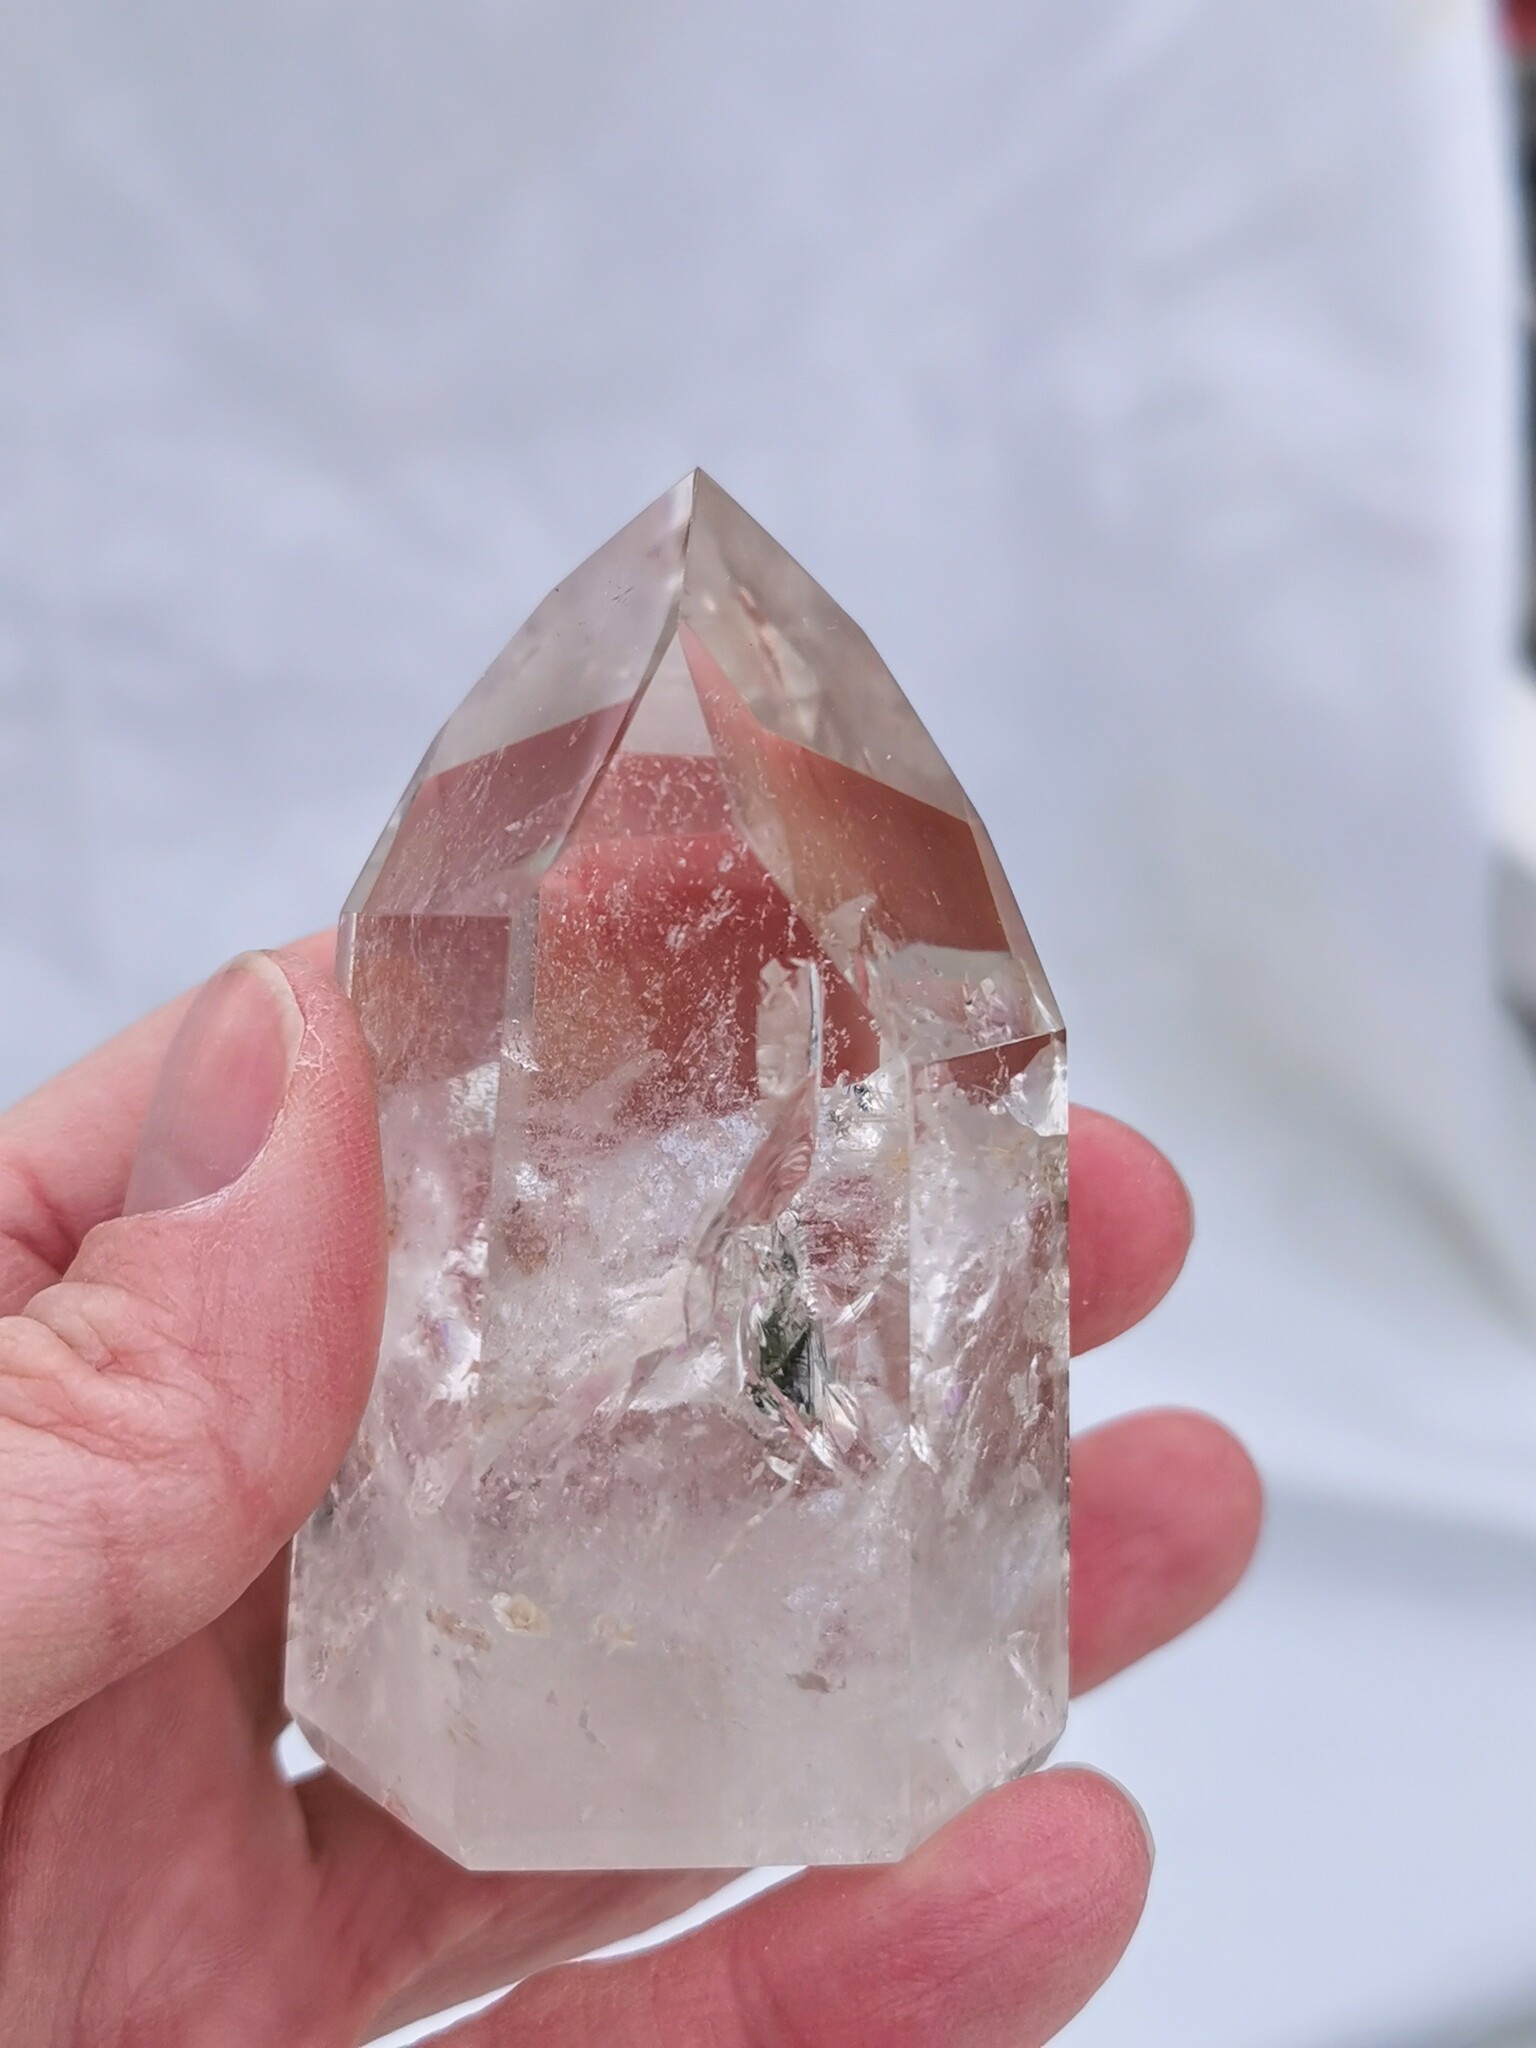 Bergkristall spets, polerad, 7,5 cm hög.